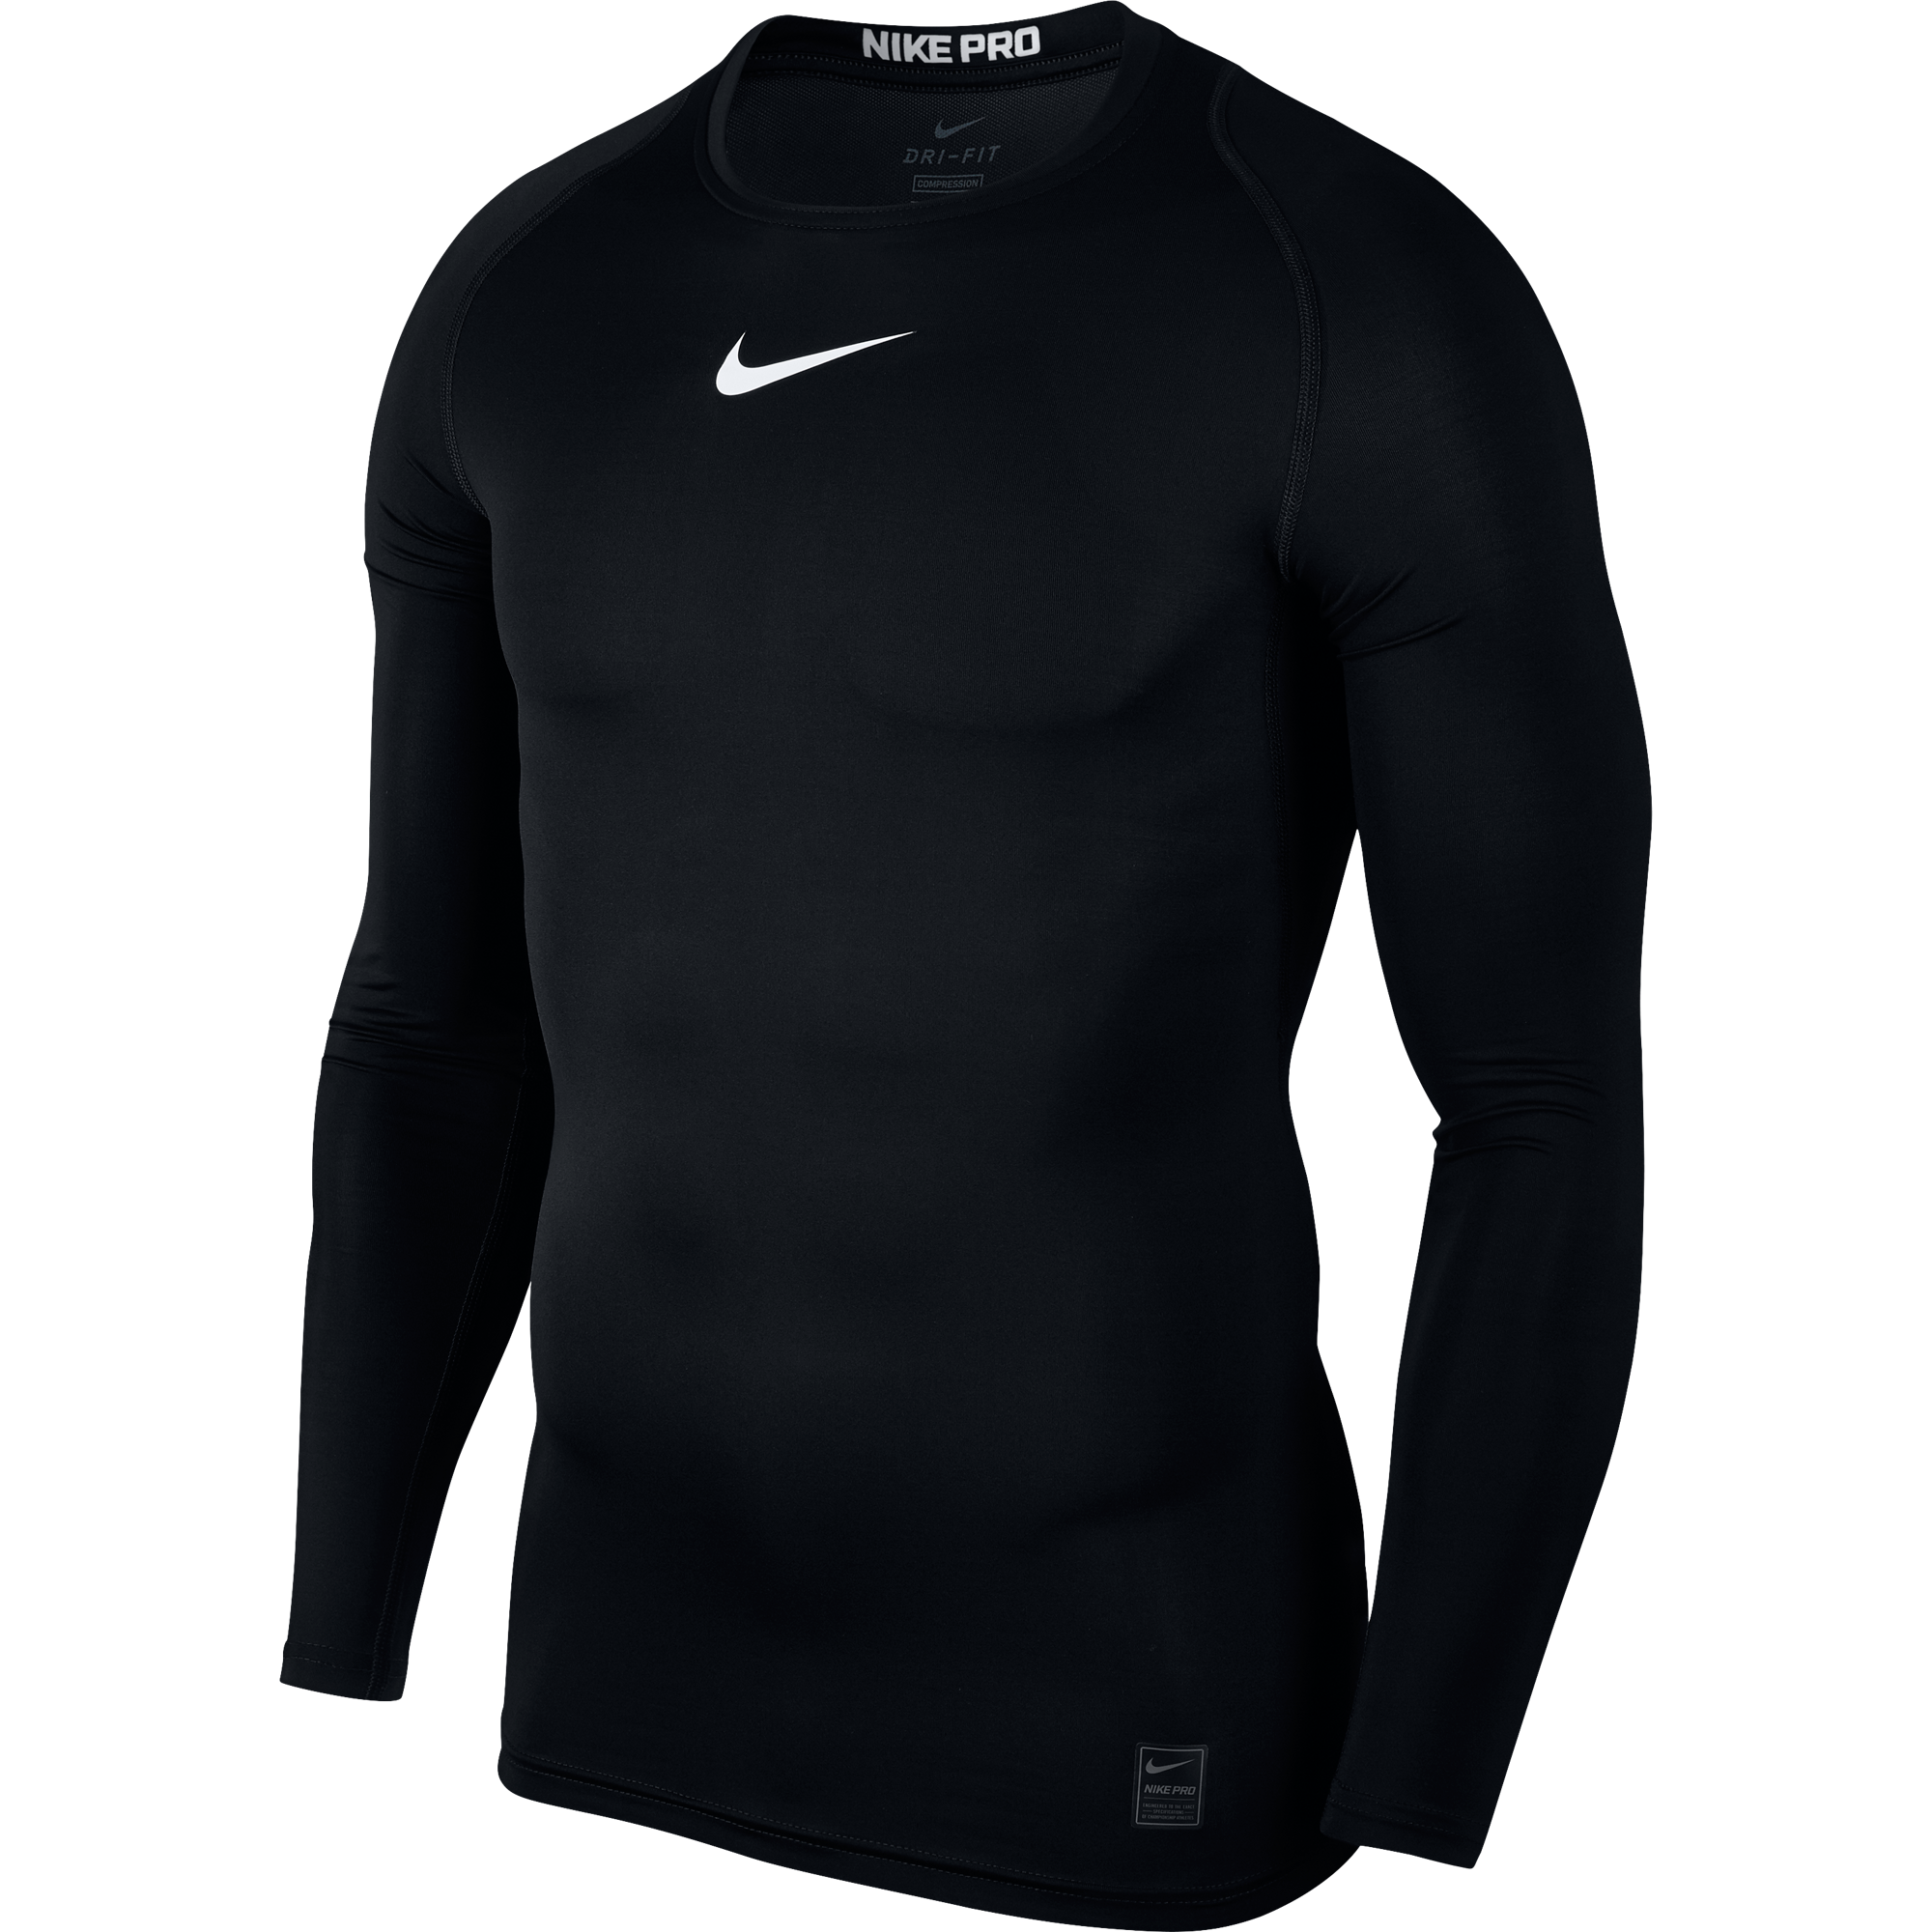 Nike Pro - Black